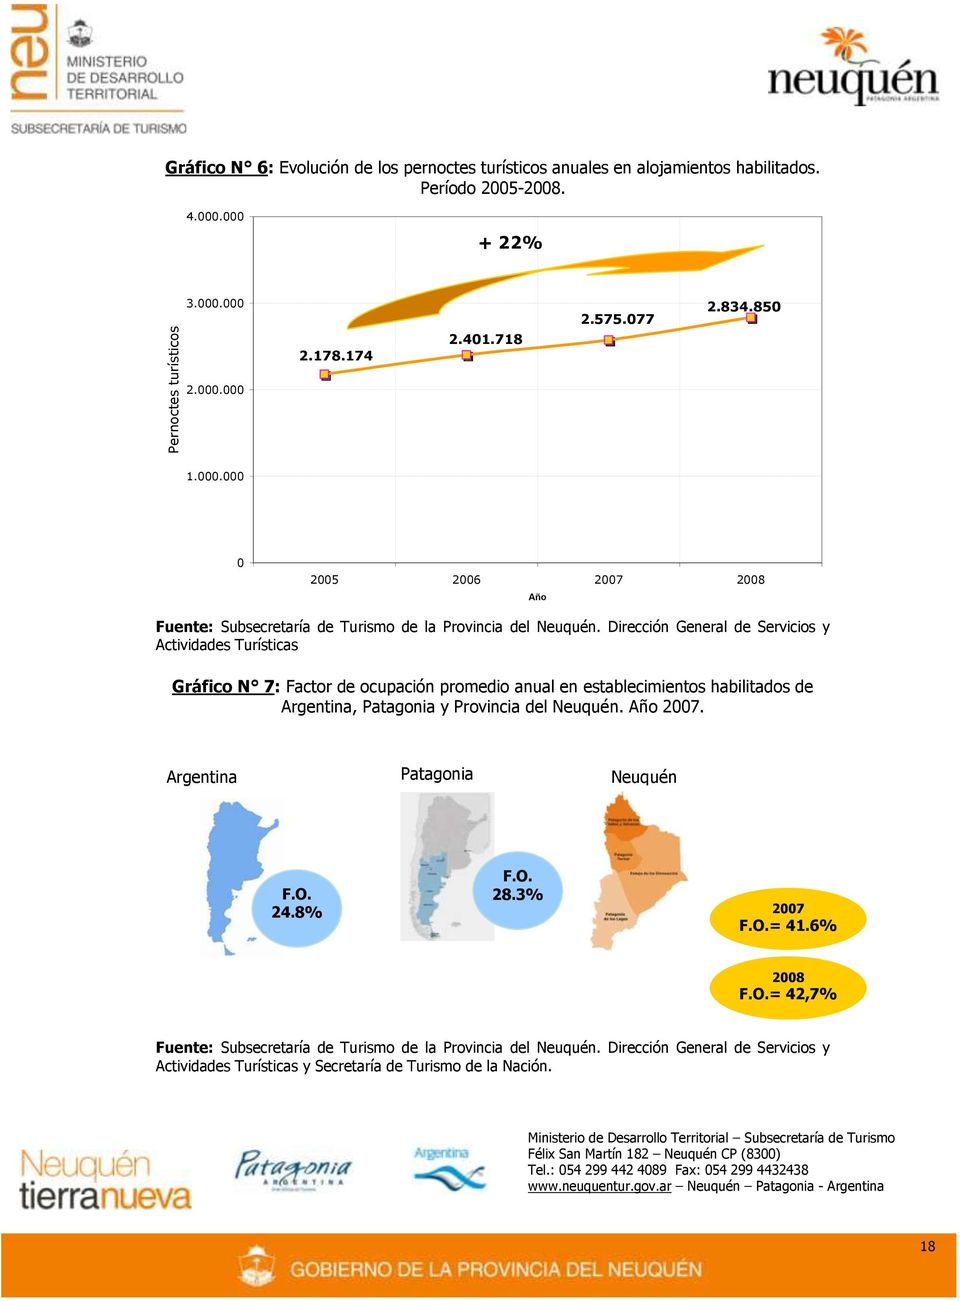 Dirección General de Servicios y Actividades Turísticas Gráfico N 7: Factor de ocupación promedio anual en establecimientos habilitados de Argentina, Patagonia y Provincia del Neuquén.